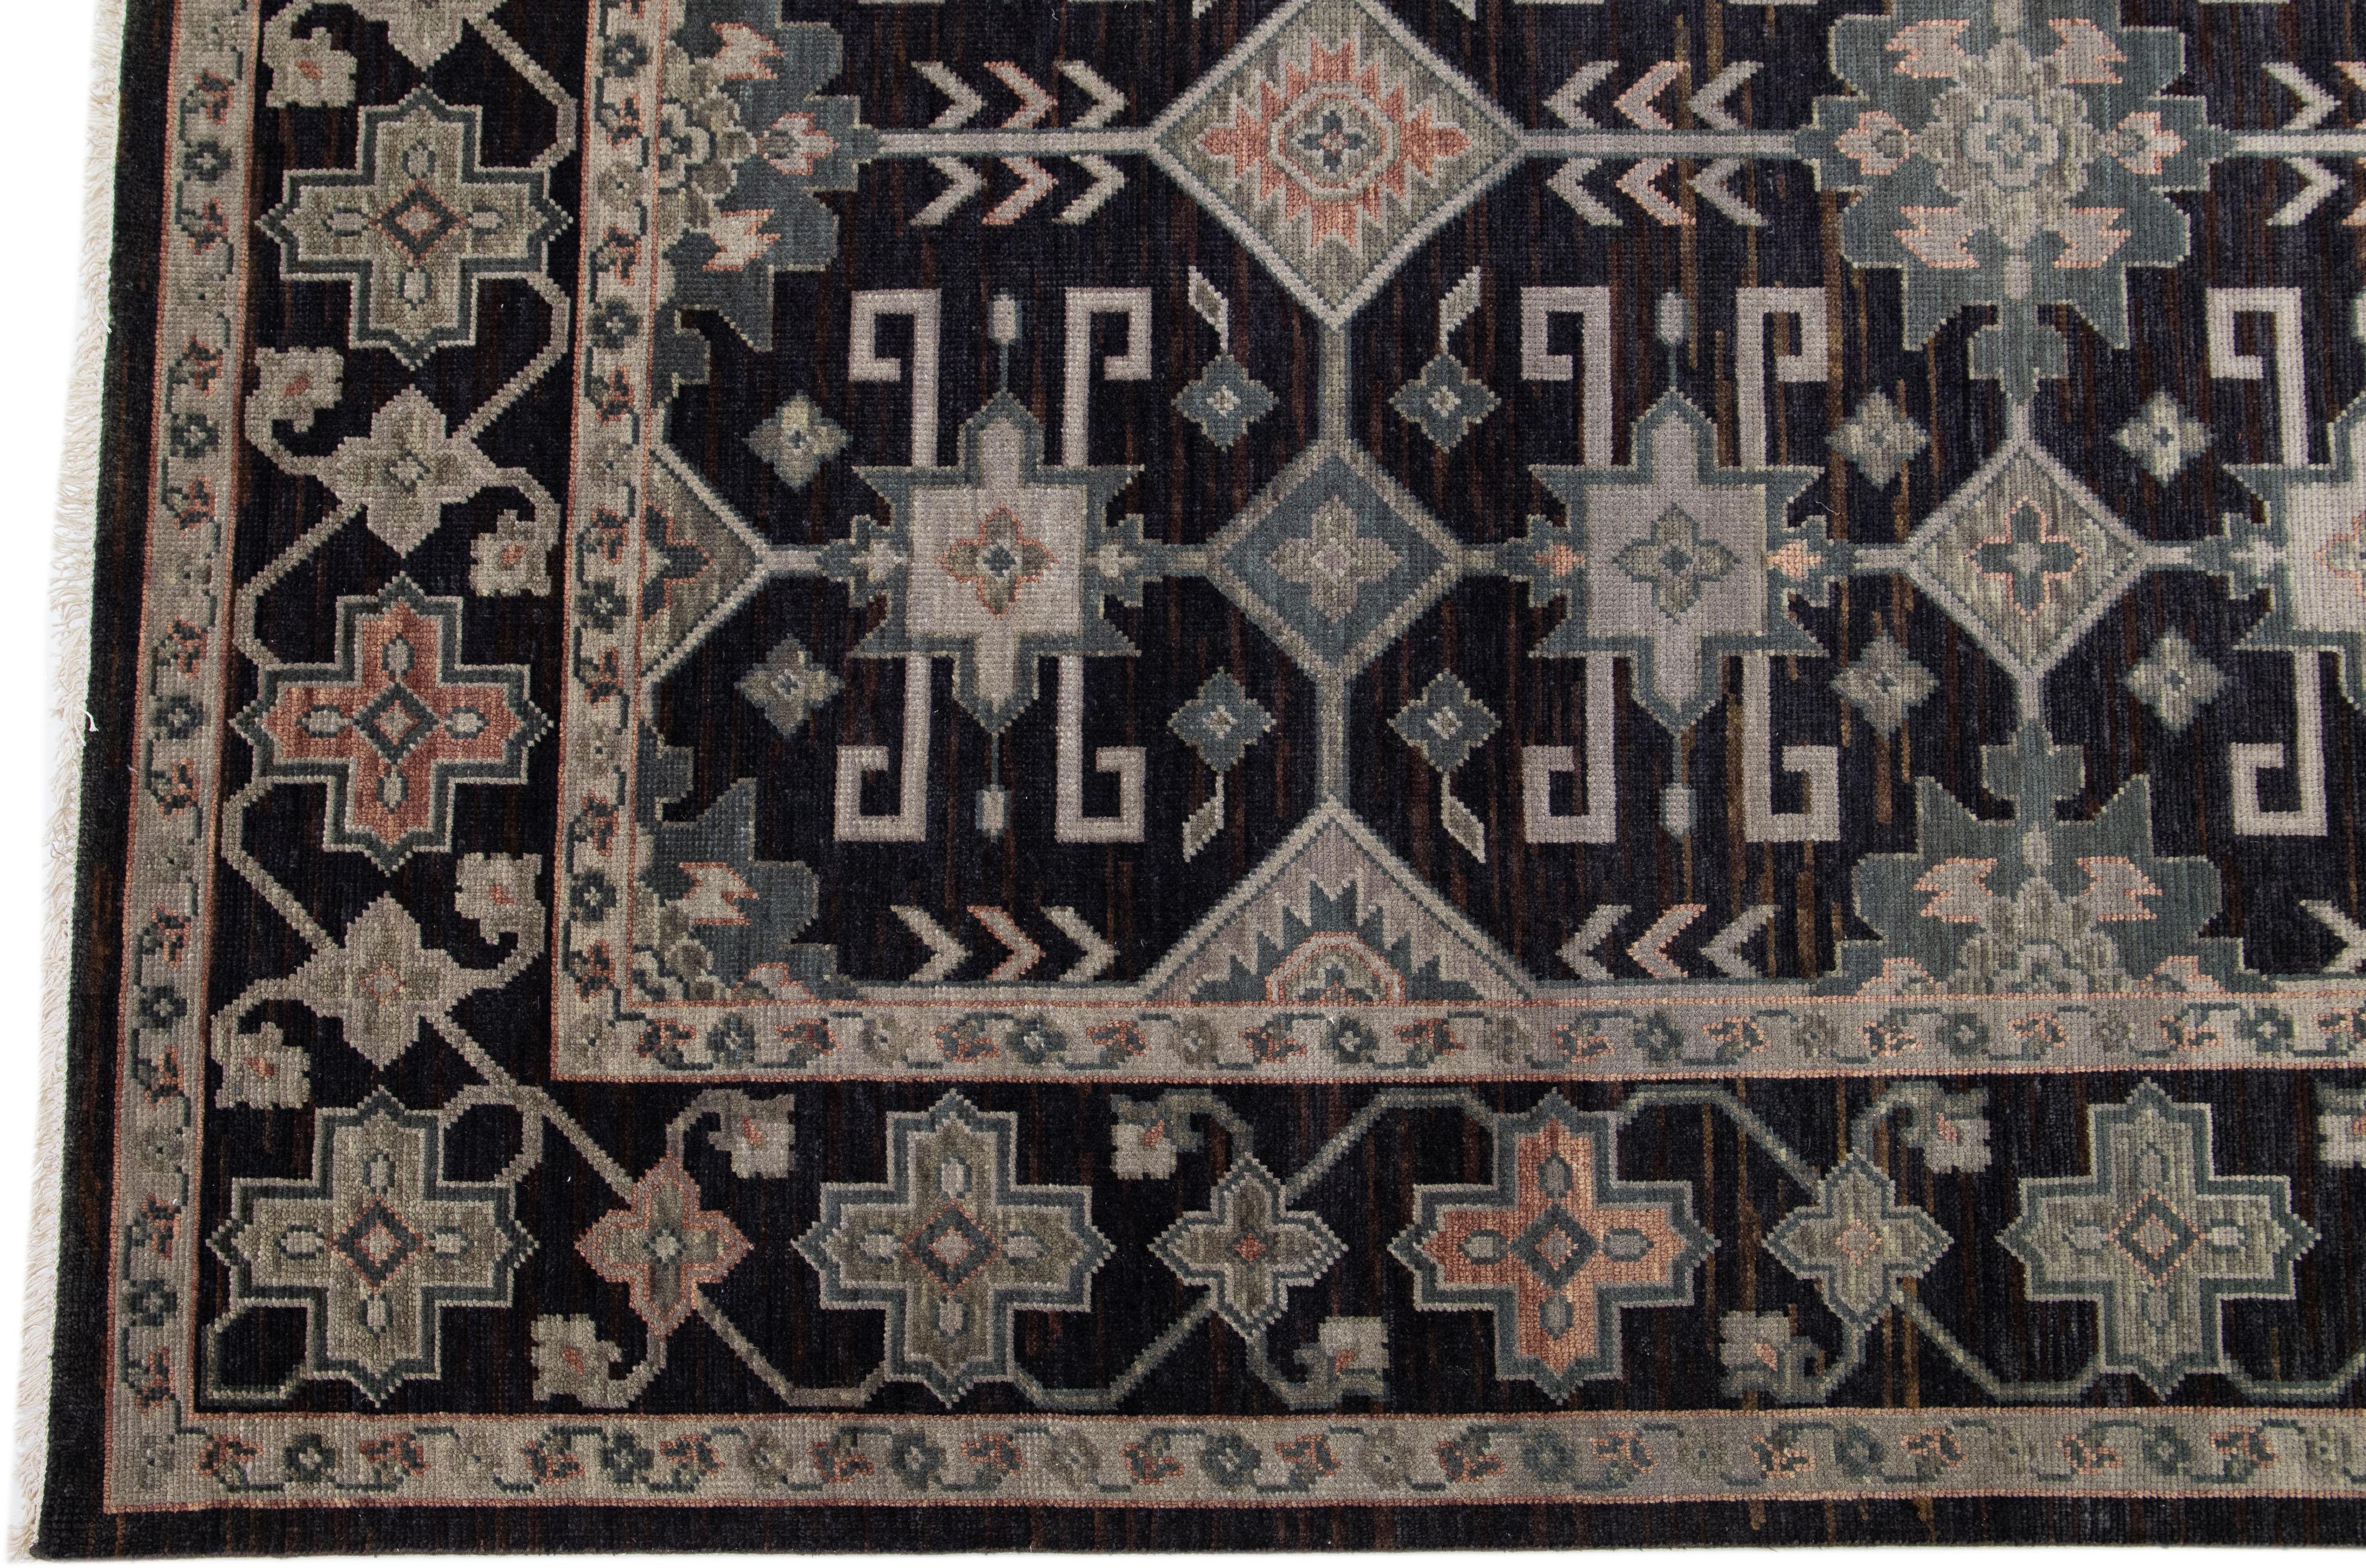 Schöner moderner, handgeknüpfter Oushak-Teppich aus Wolle mit einem anthrazitfarbenen Feld. Dieser türkische Teppich hat einen gestalteten Rahmen mit grauen, beigen und pfirsichfarbenen Akzenten in einem wunderschönen, geometrischen